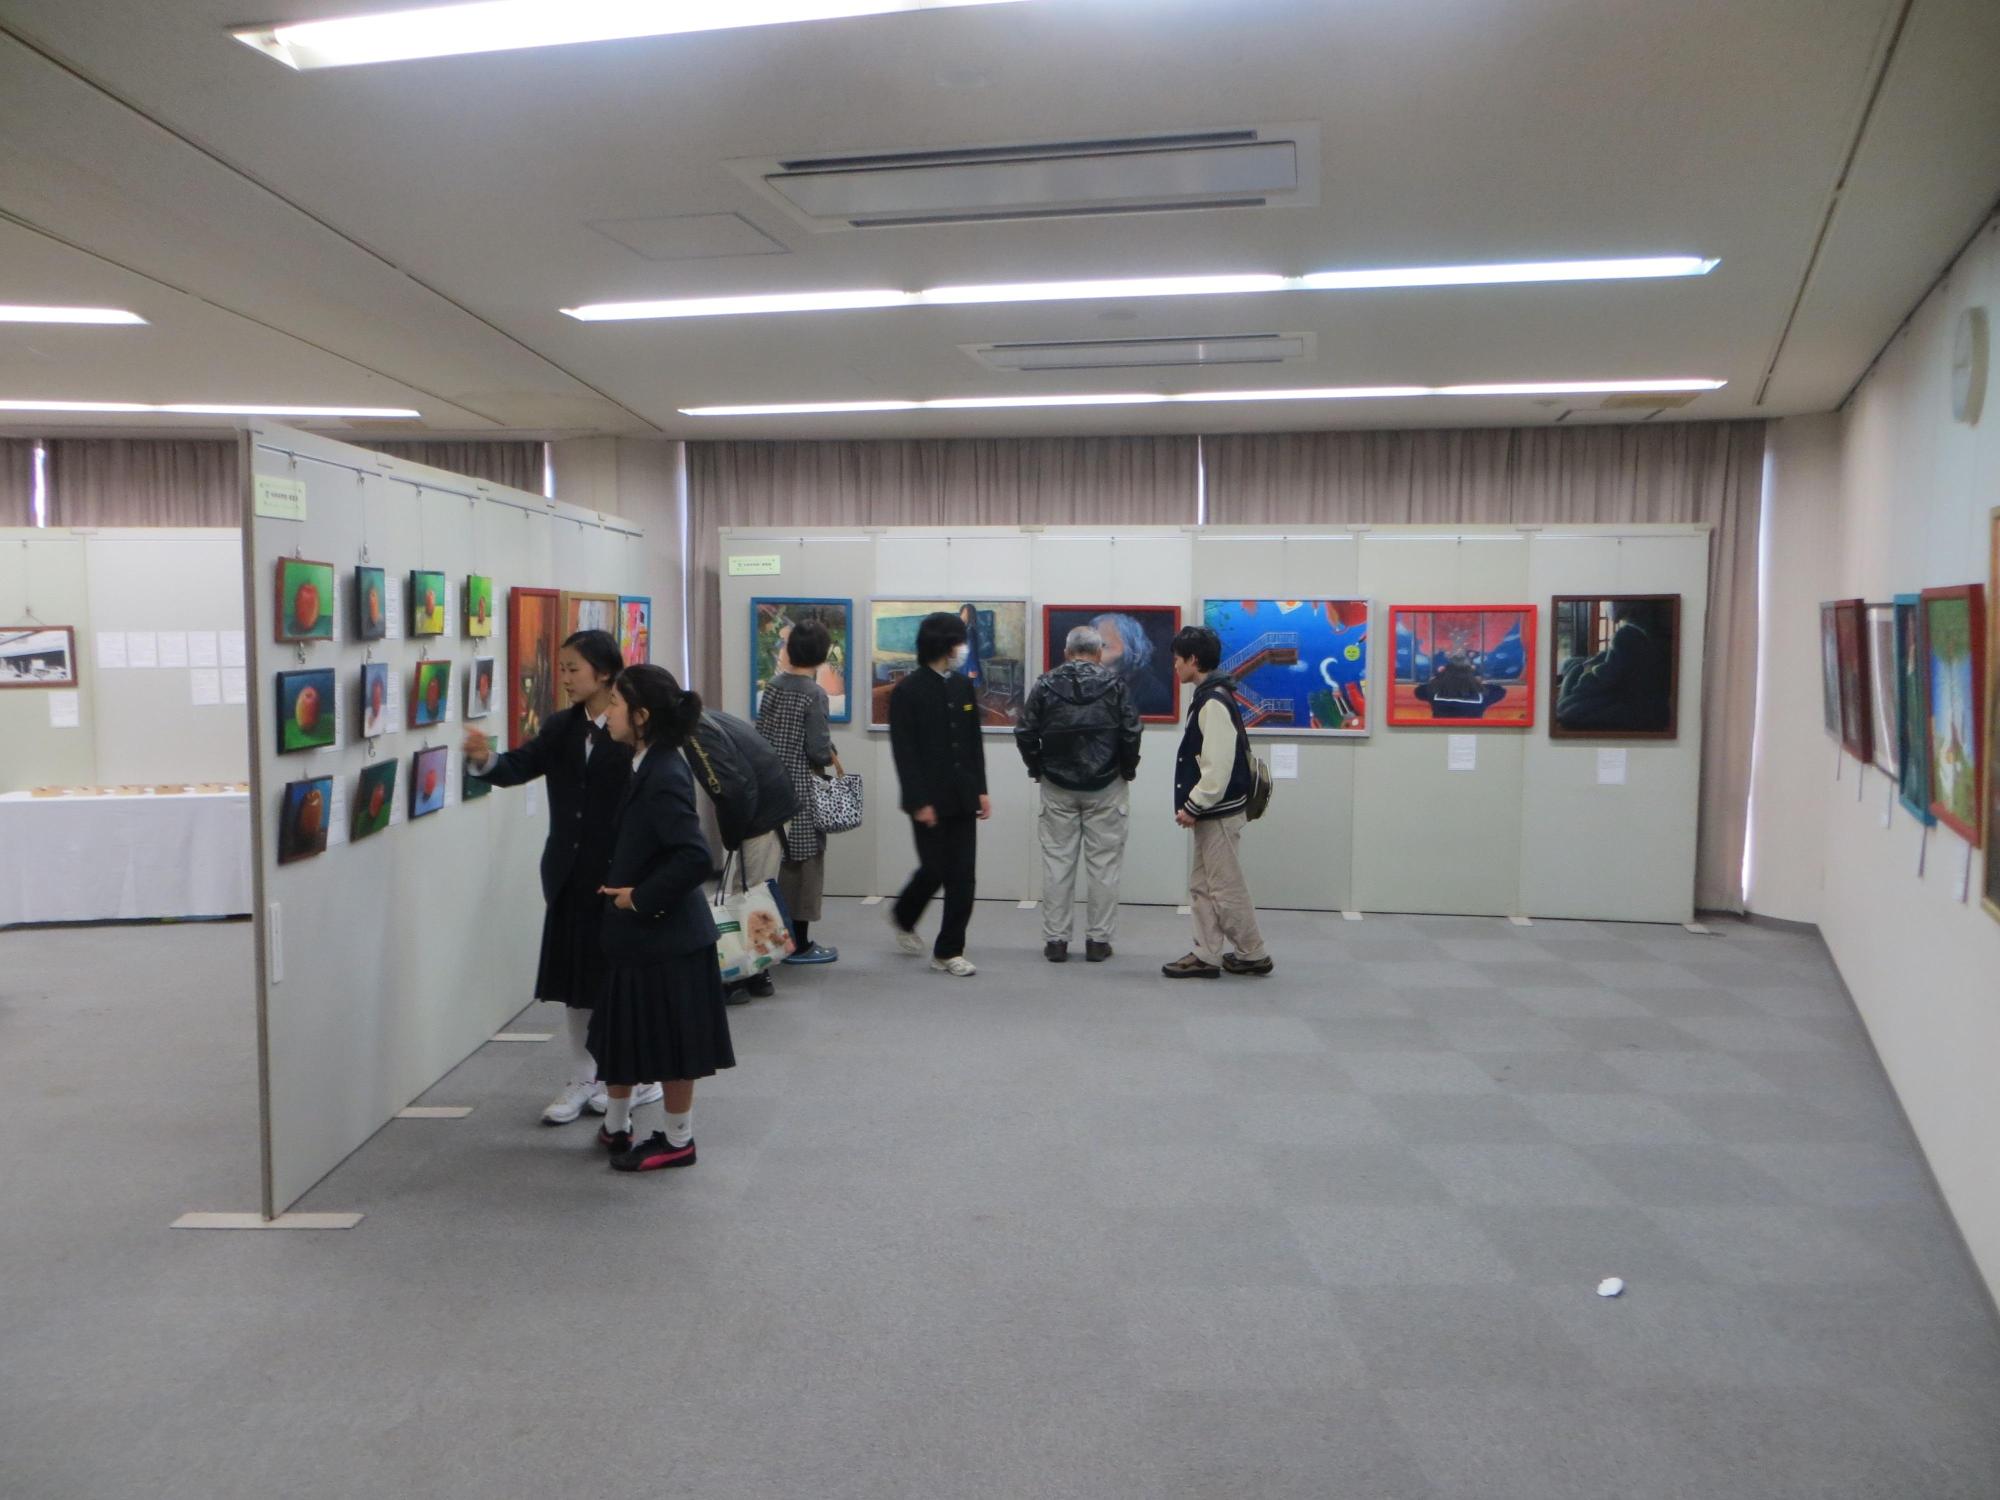 研修室に展示された作品と見学している人々の写真